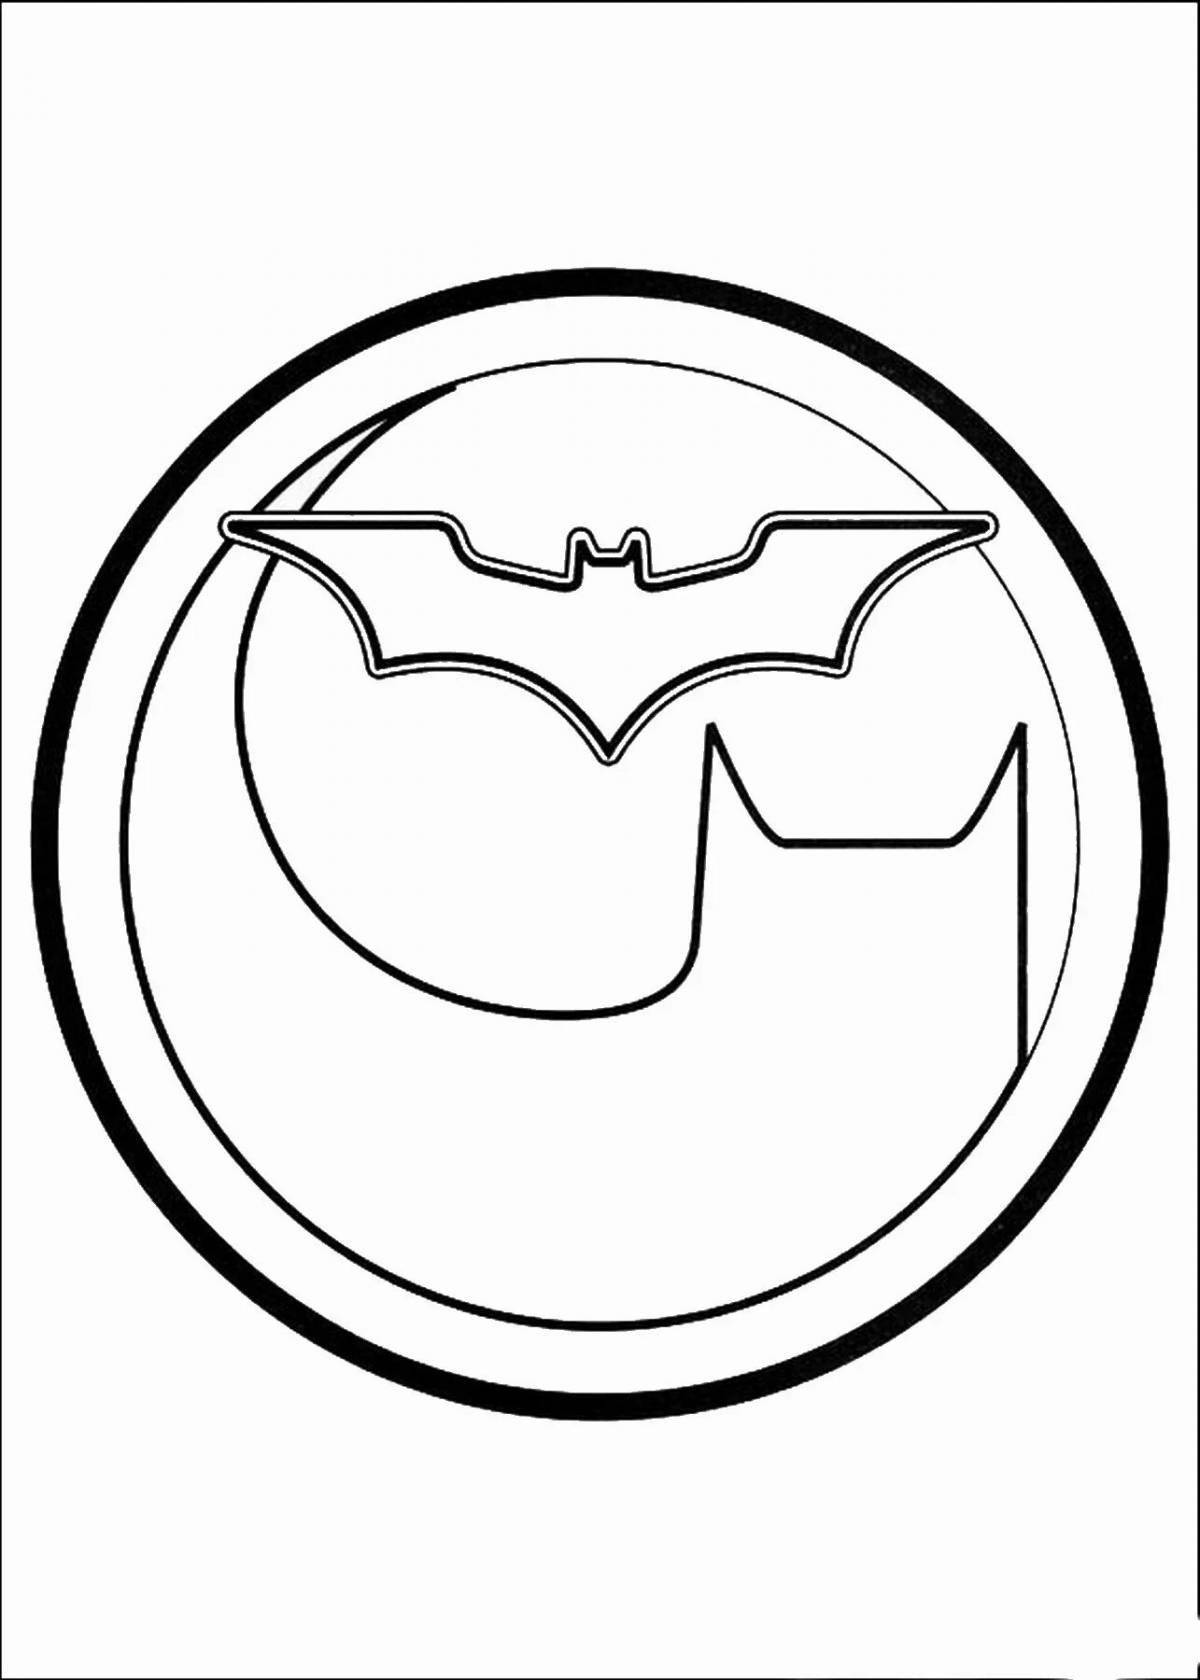 Элегантный логотип раскраски страницы